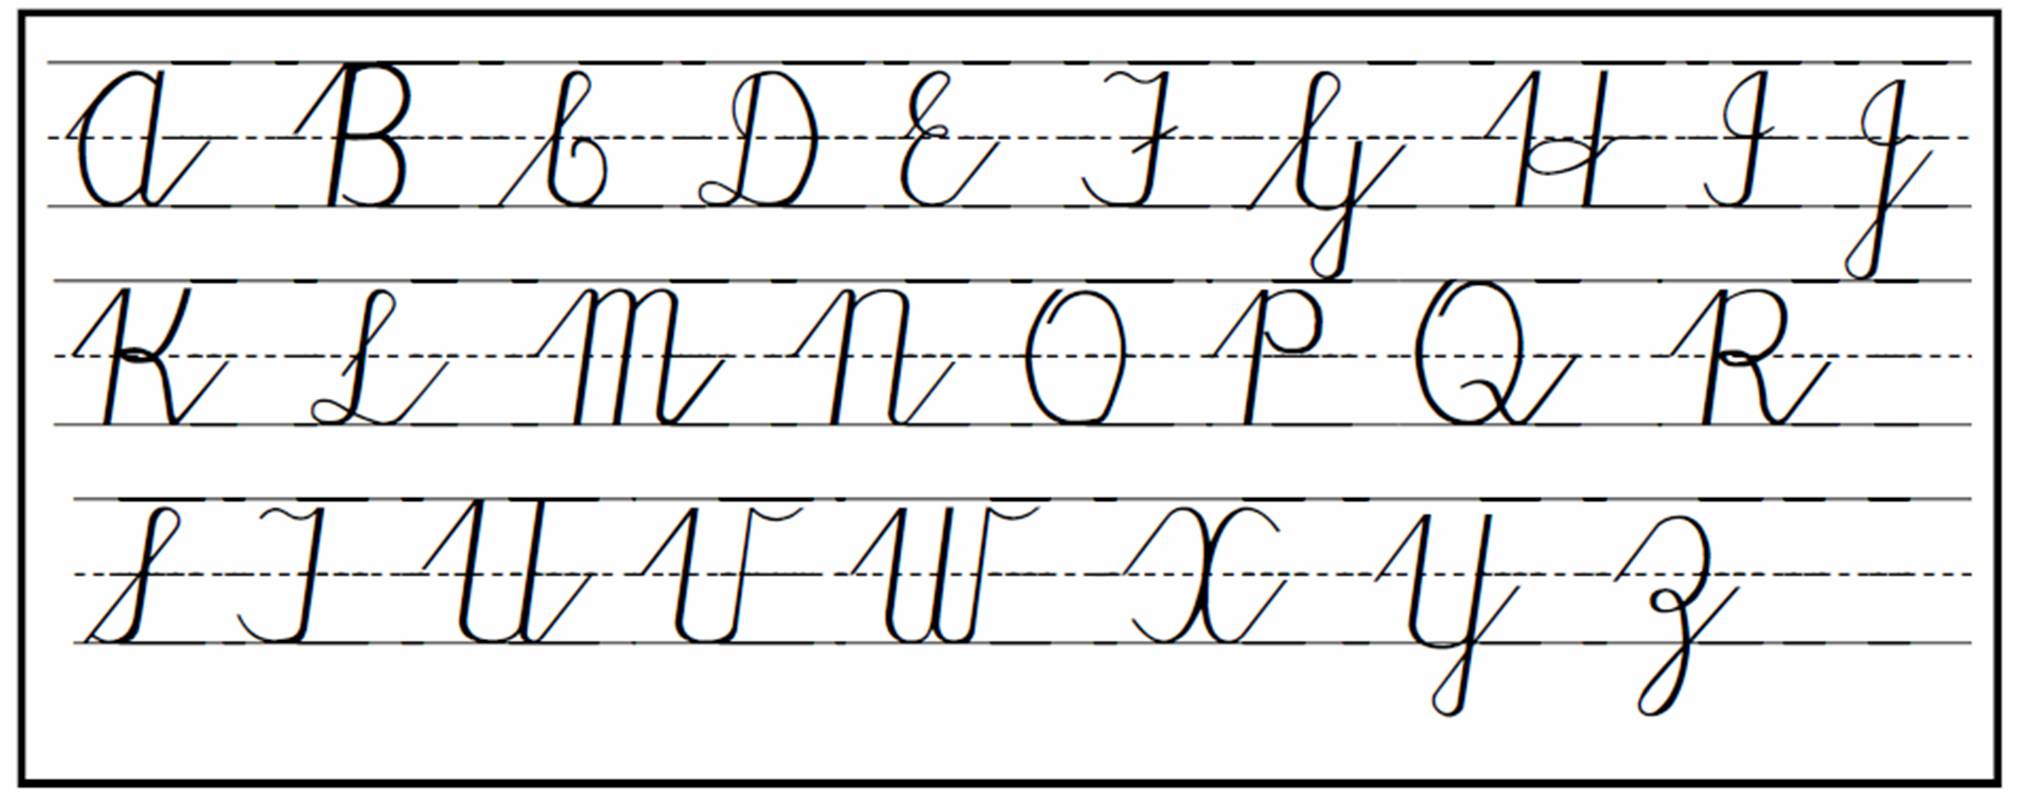 cursive-handwriting-styles-hand-writing